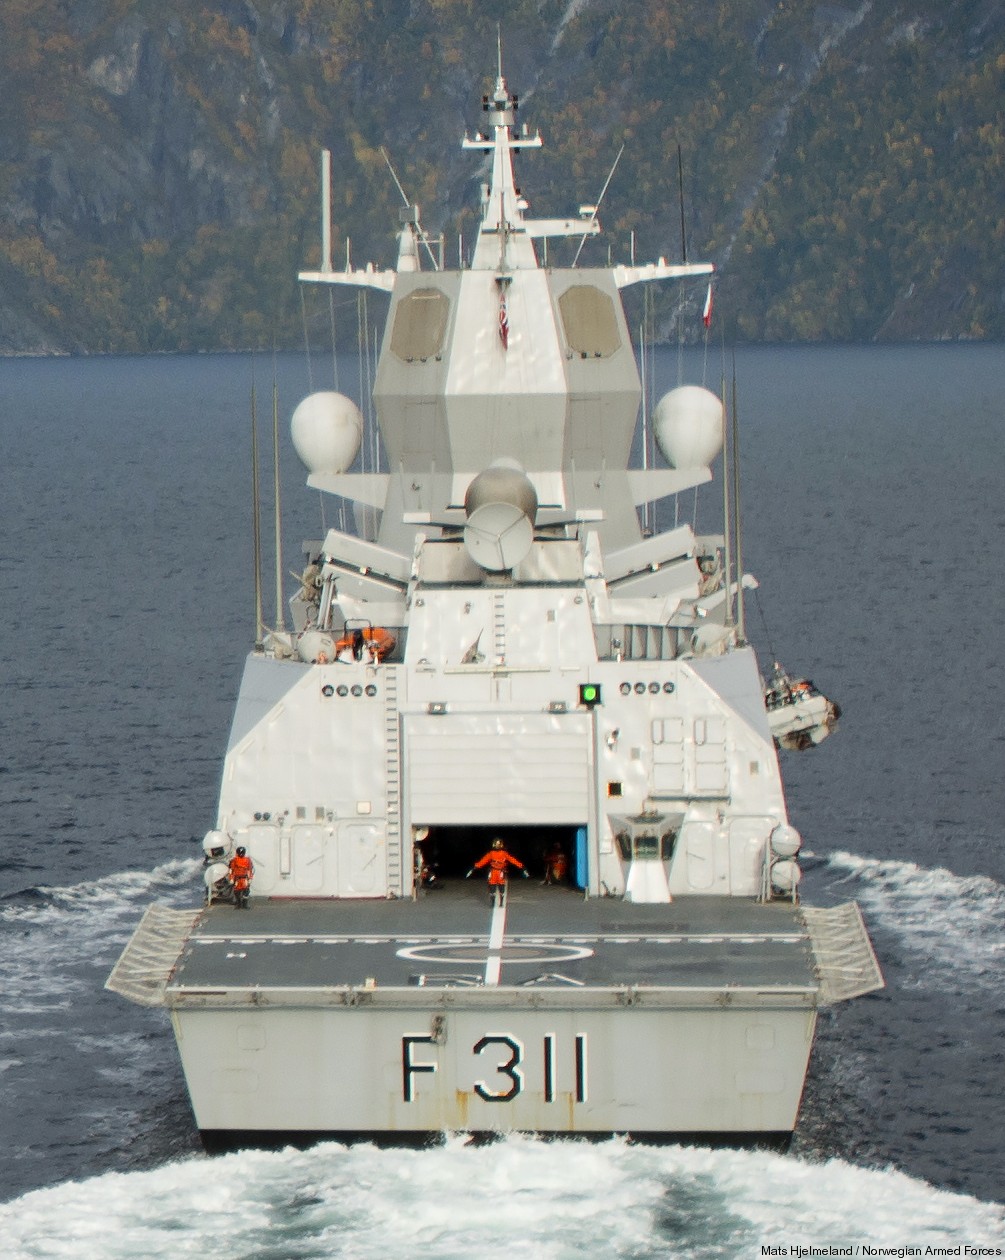 f-311 hnoms roald amundsen knm nansen class frigate royal norwegian navy sjoforsvaret 59 flight deck hangar nh-90